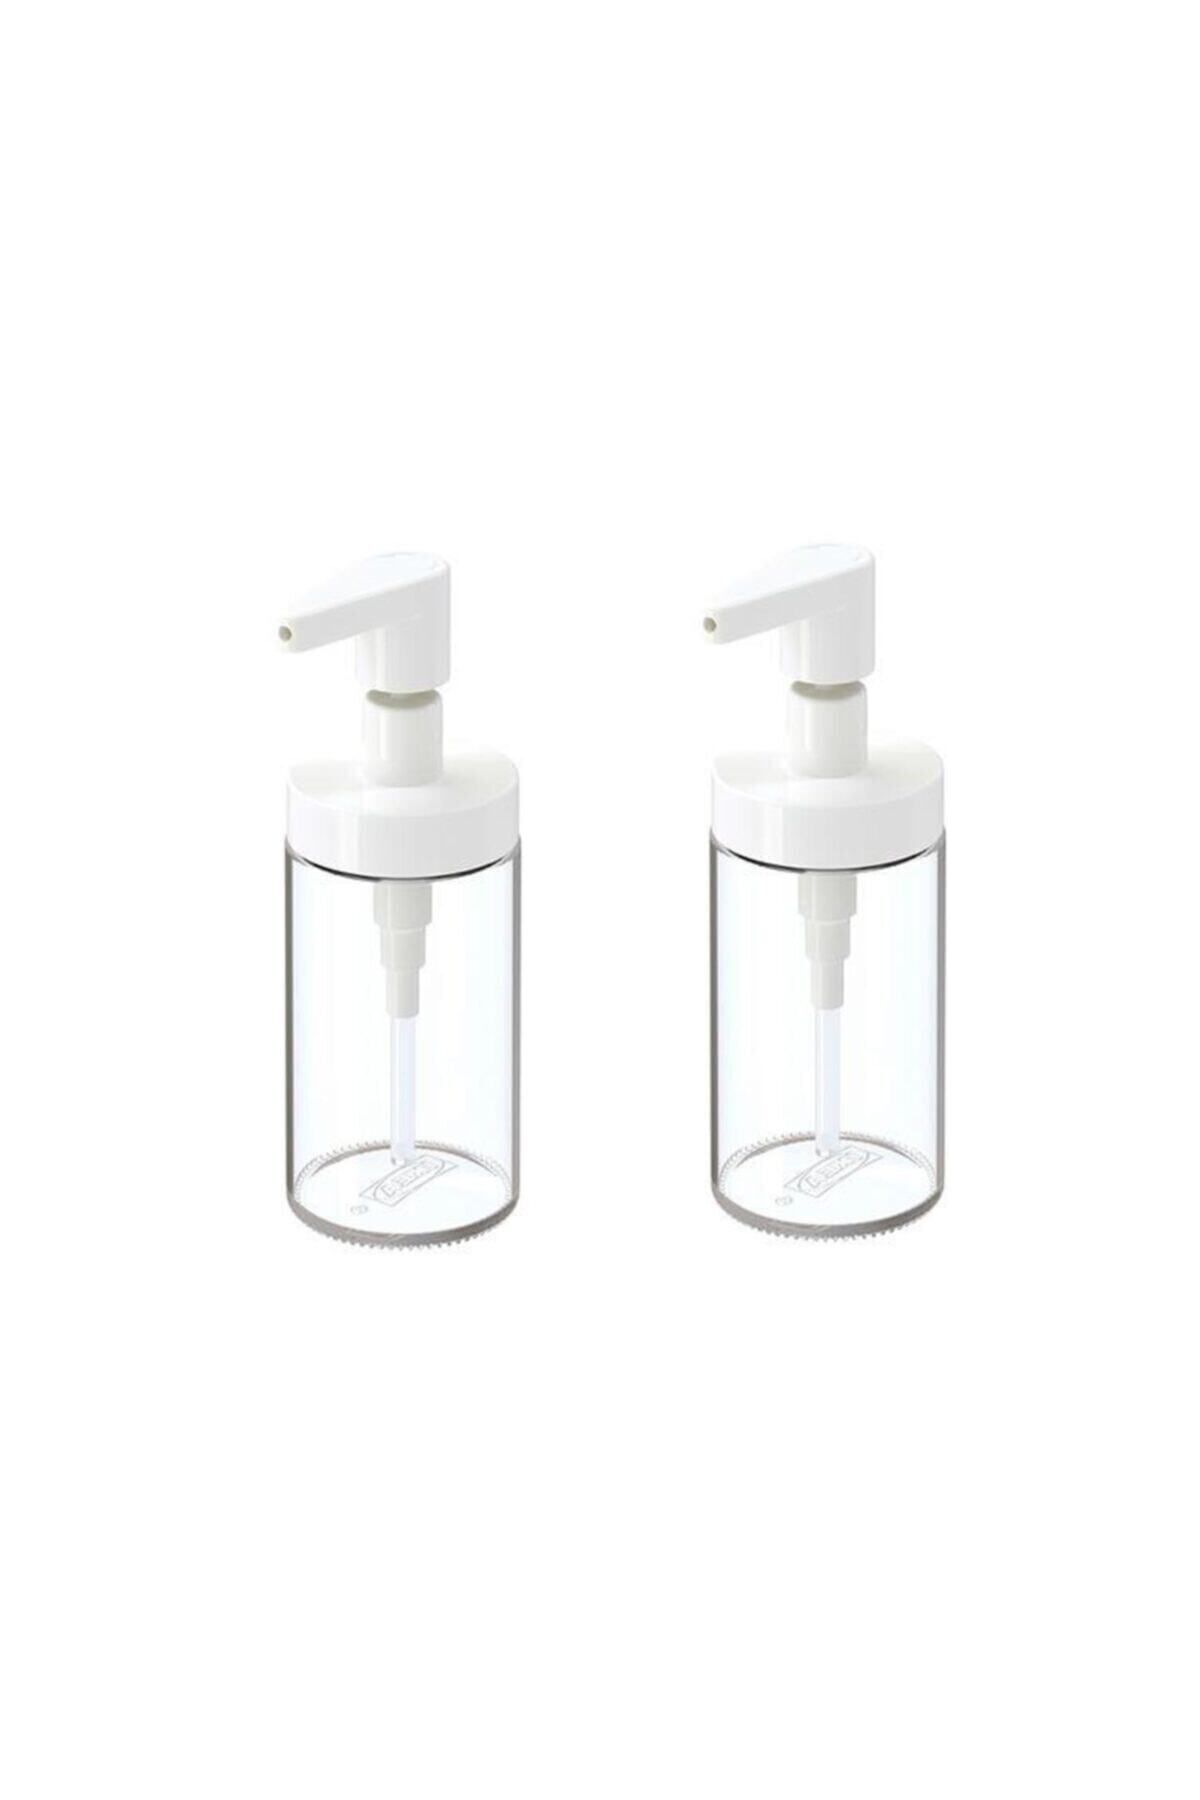 IKEA Beyaz Tackan Sıvı Sabunluk Cam - Beyaz Kapaklı X 2 Adet Cam